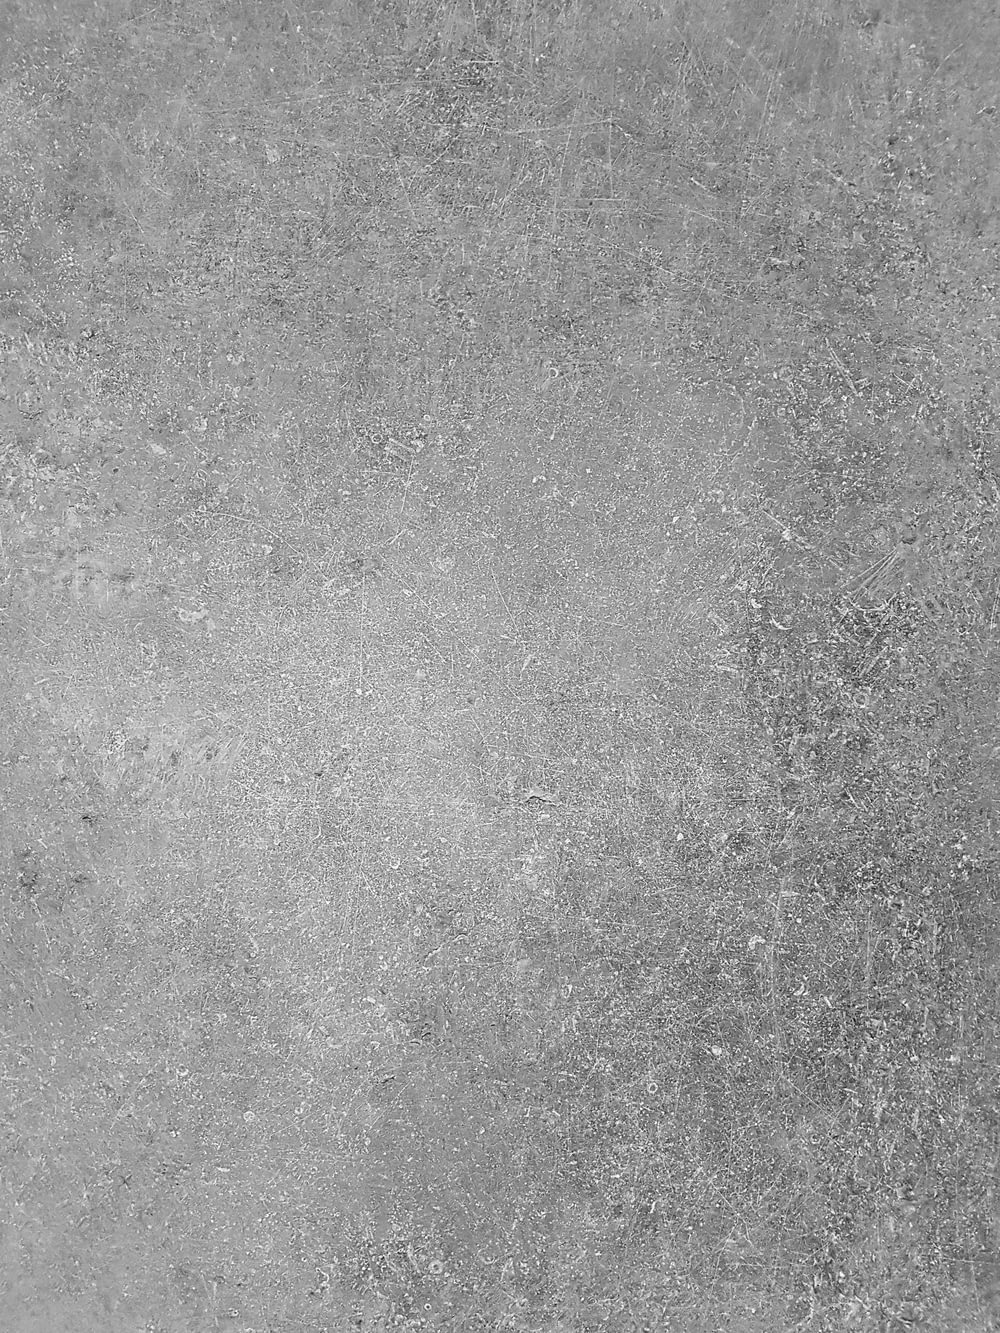 uma foto em preto e branco de uma parede de concreto